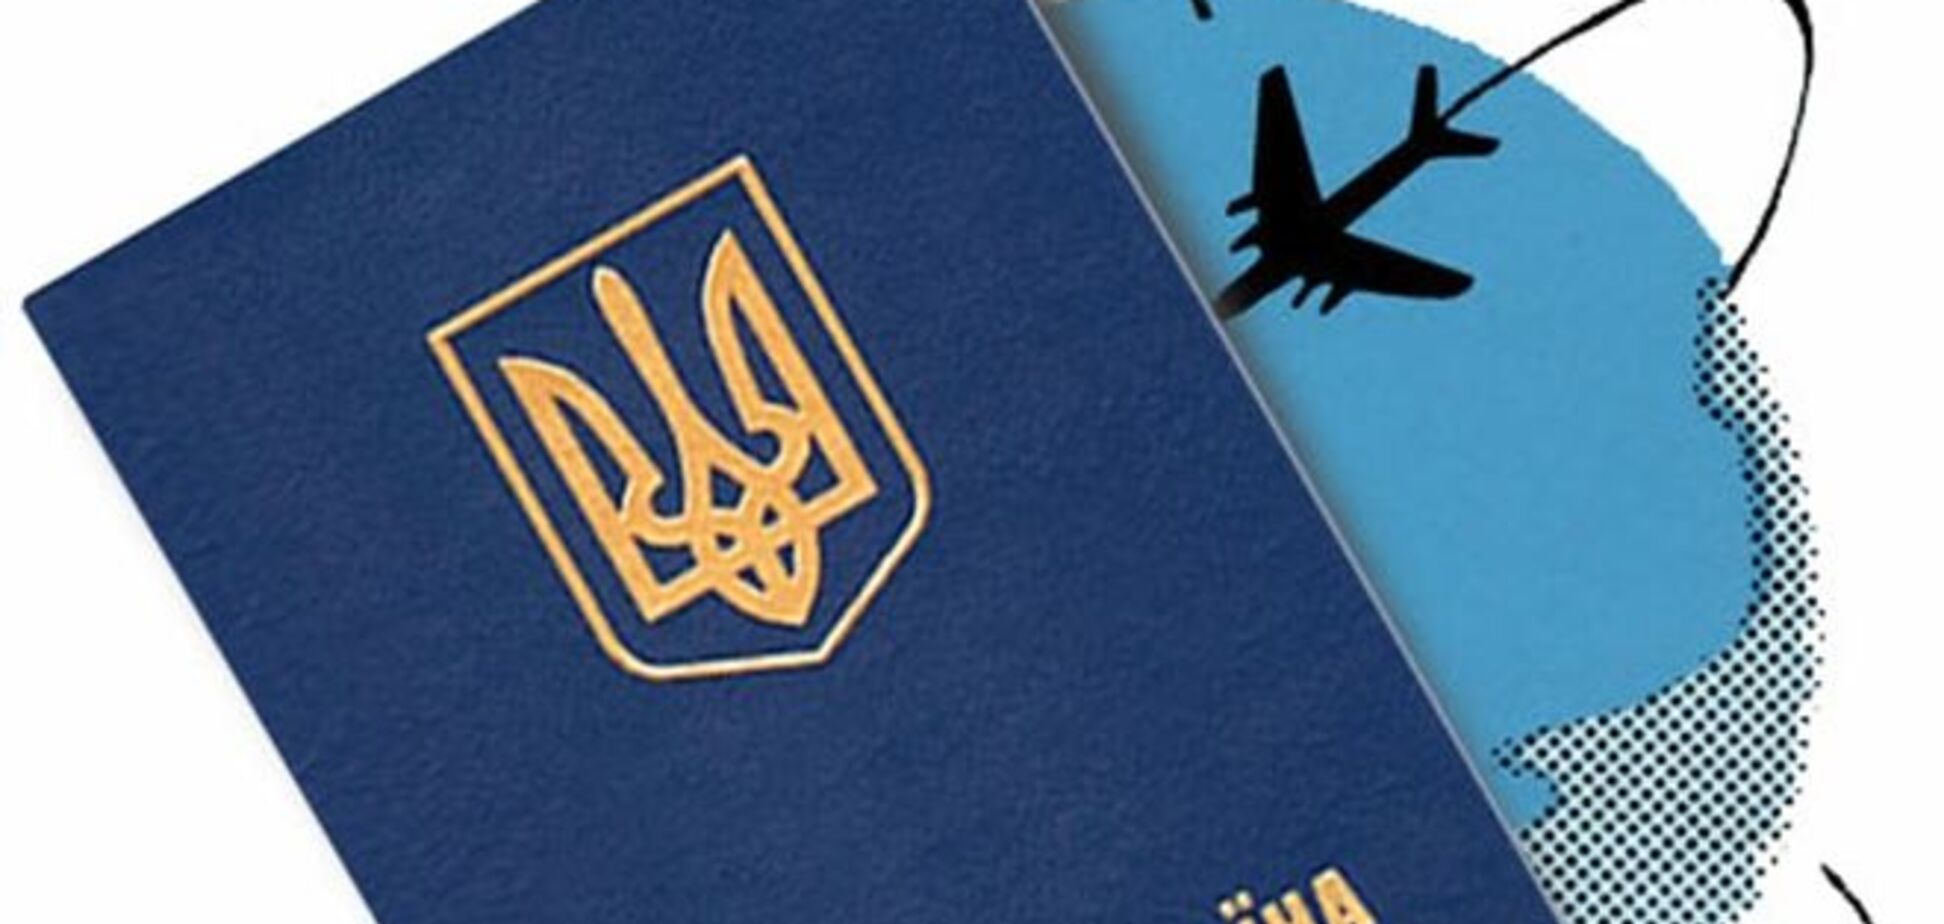 АМКУ розбереться з нав'язуванням платних послуг в навантаження до закордонного паспорту